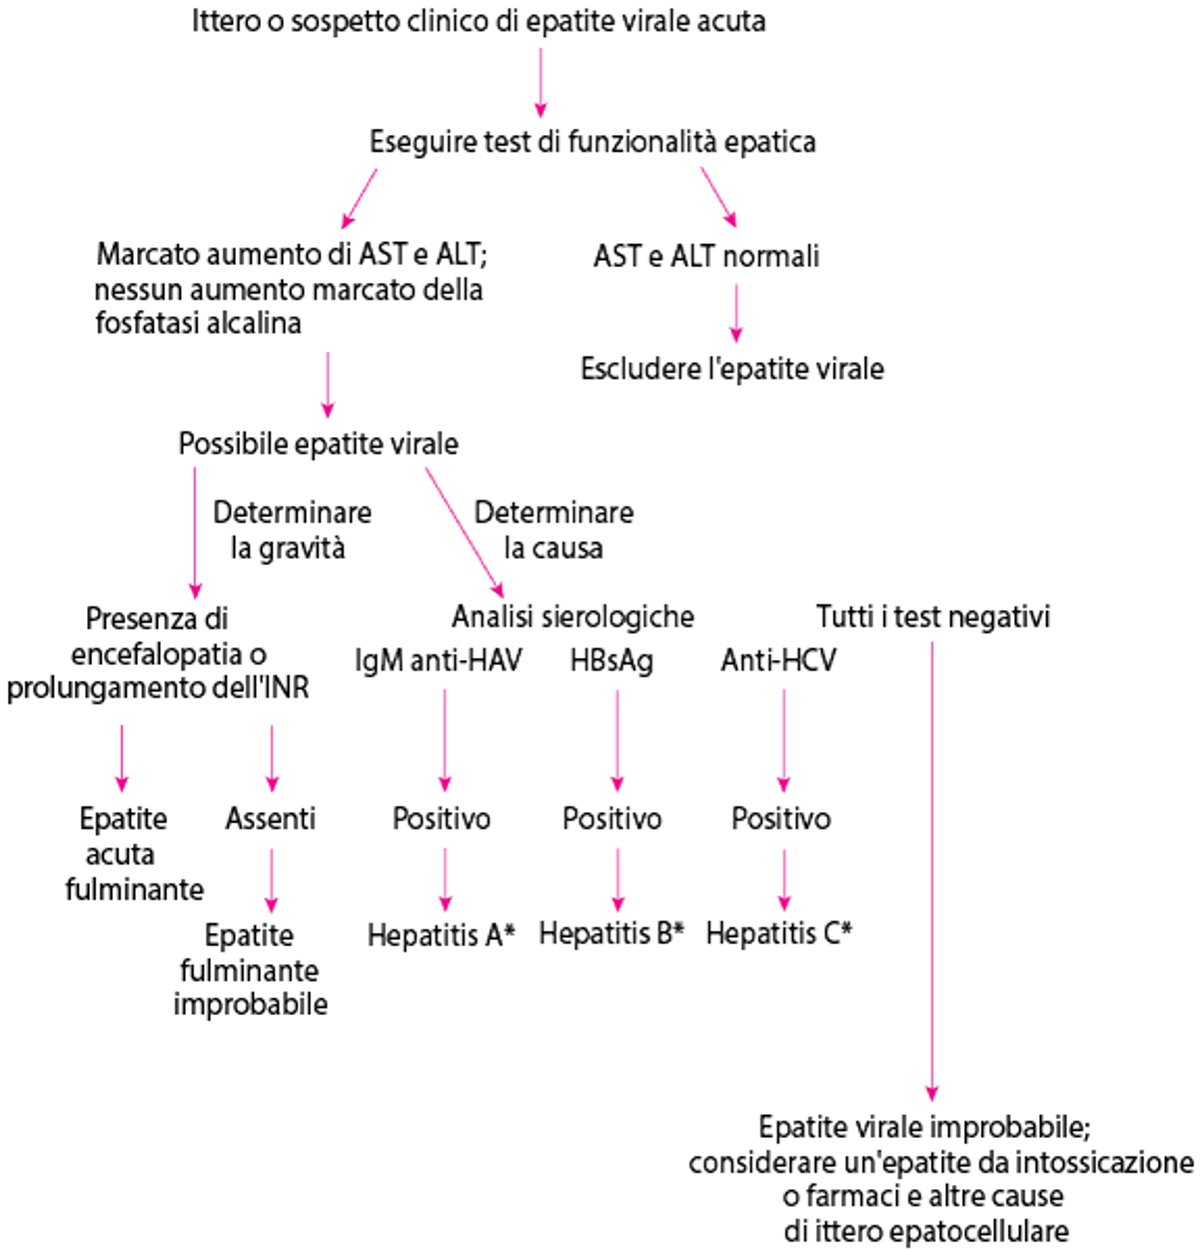 Approccio diagnostico semplificato a una possibile epatite virale acuta